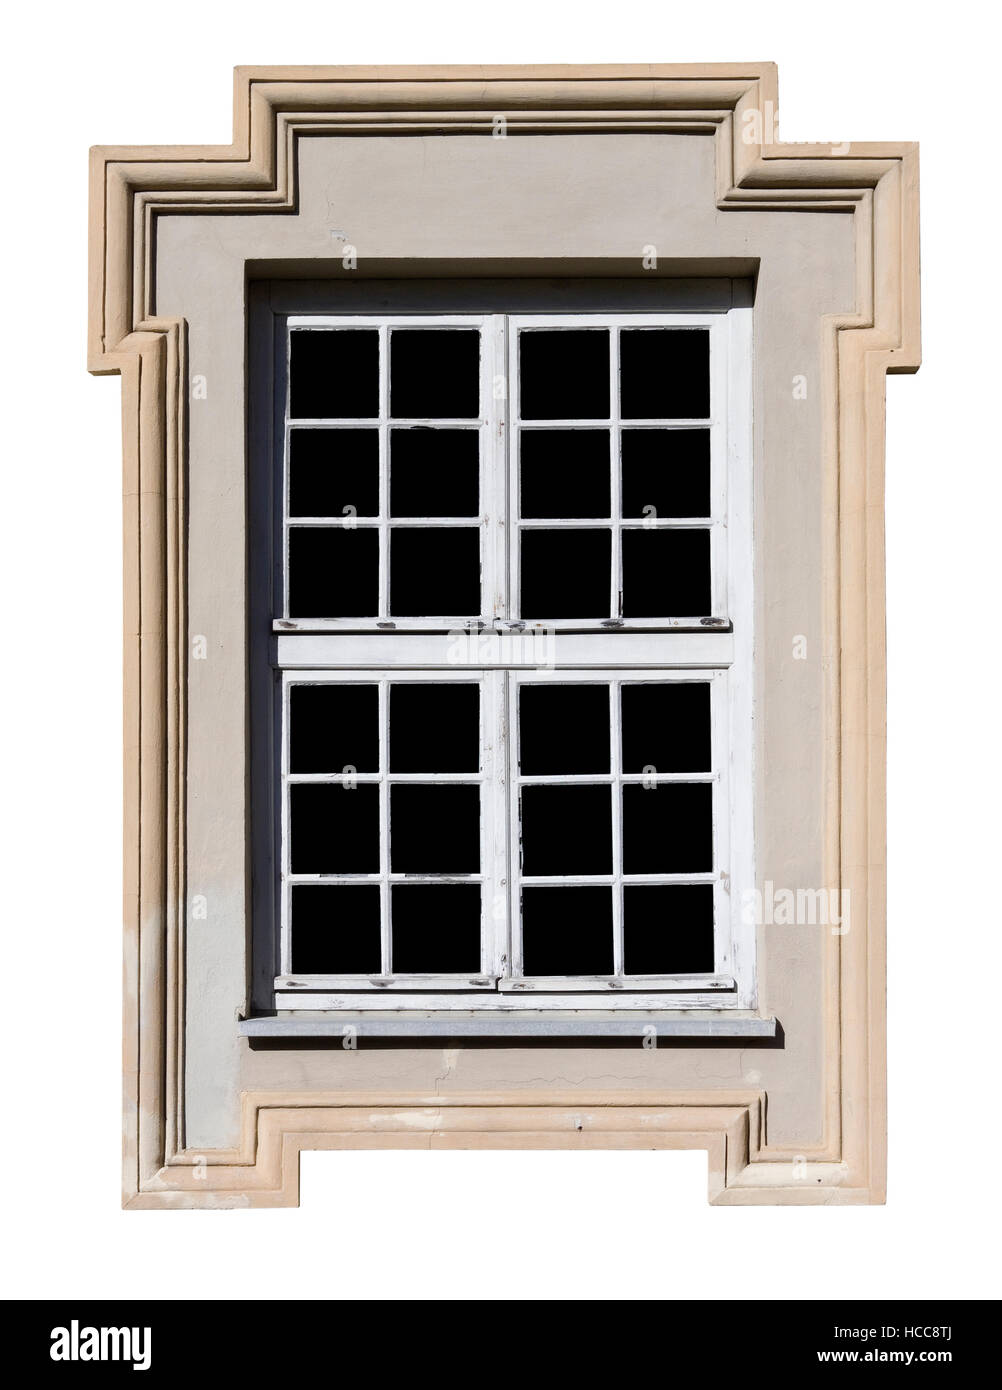 Das Fenster in der Wand des alten Hauses hat einen Rahmen in Form eines Steines zu überqueren. Isoliert auf weiss. Glas isoliert auf schwarz. Stockfoto